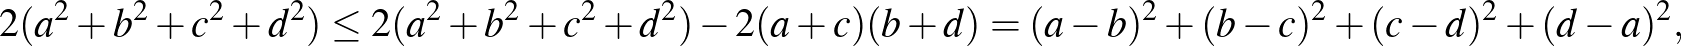 $\displaystyle 2(a^2+b^2+c^2+d^2)\leq 2(a^2+b^2+c^2+d^2)-2(a+c)(b+d) =(a-b)^2+(b-c)^2+(c-d)^2+(d-a)^2,
$